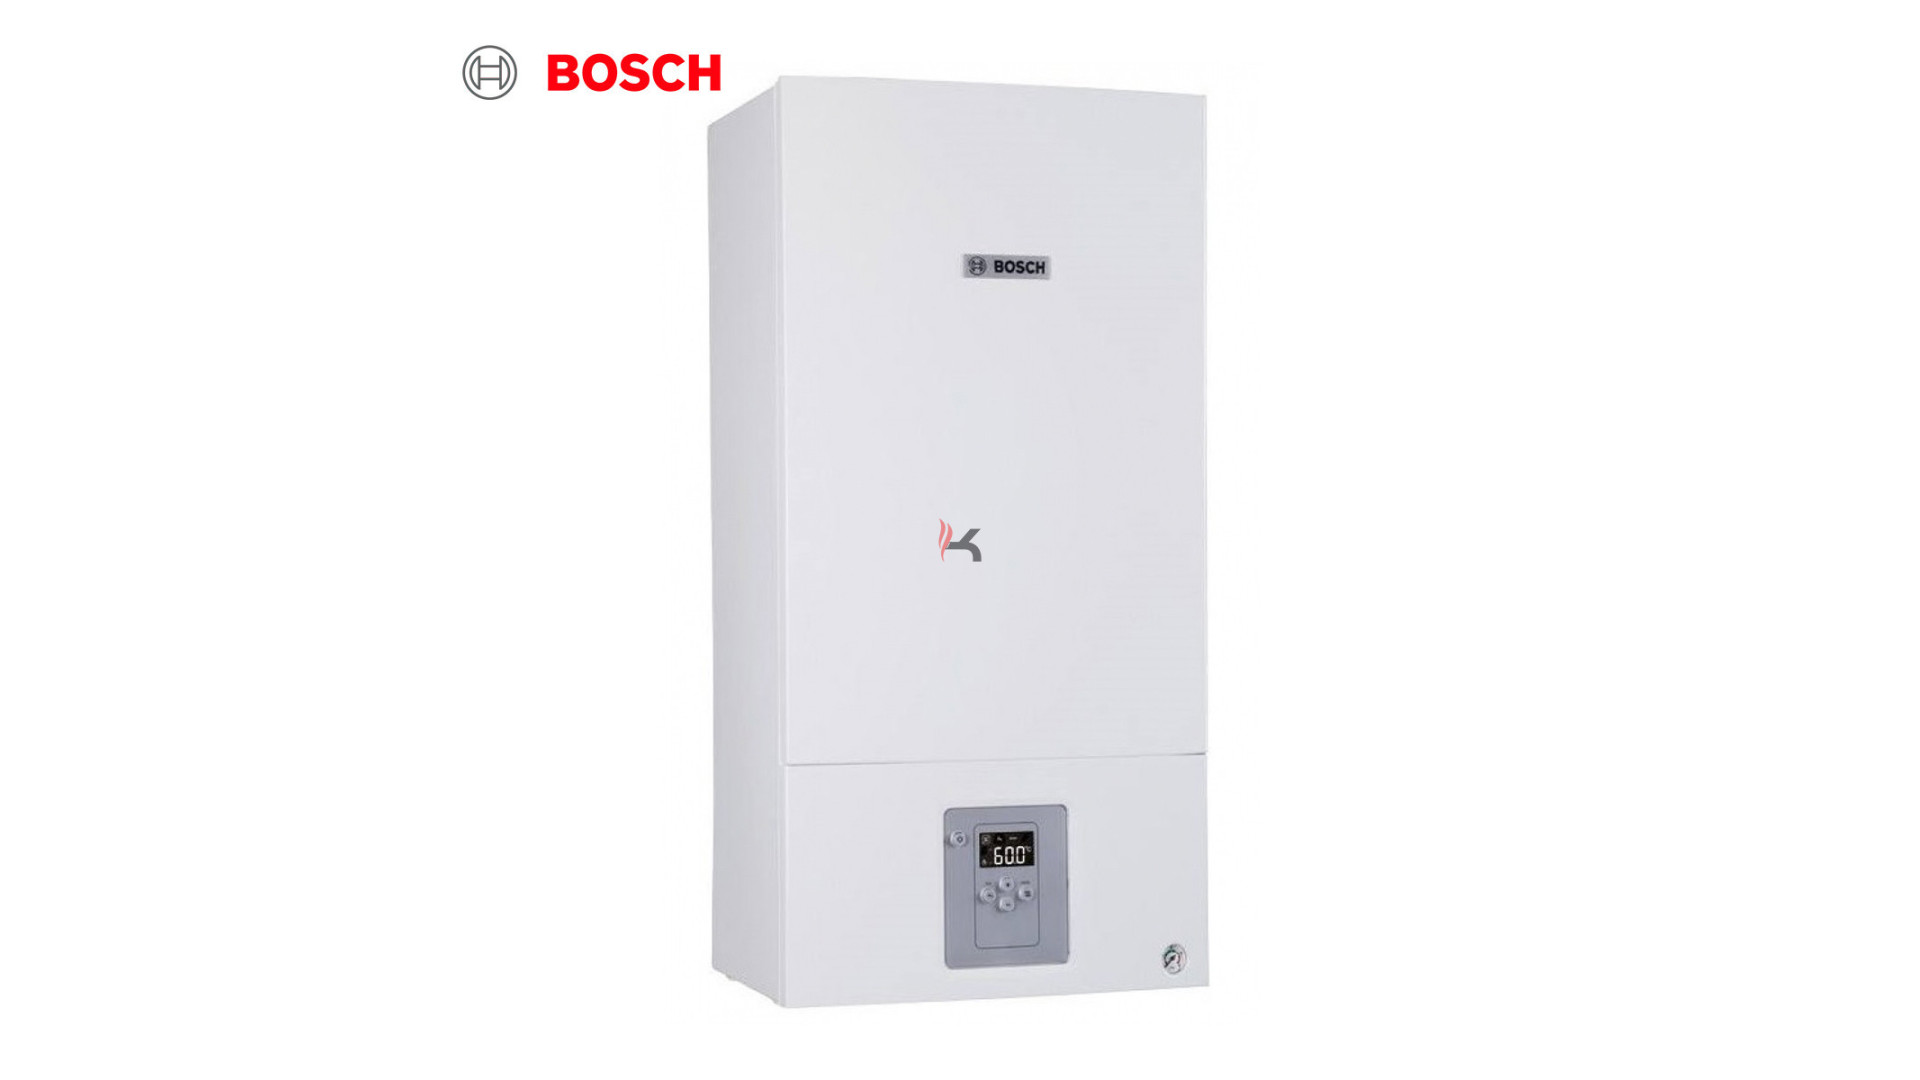 Bosch Condens 2500W WBC 24-1 DE 23 fali kondenzációs fűtő gázkazán.jpg